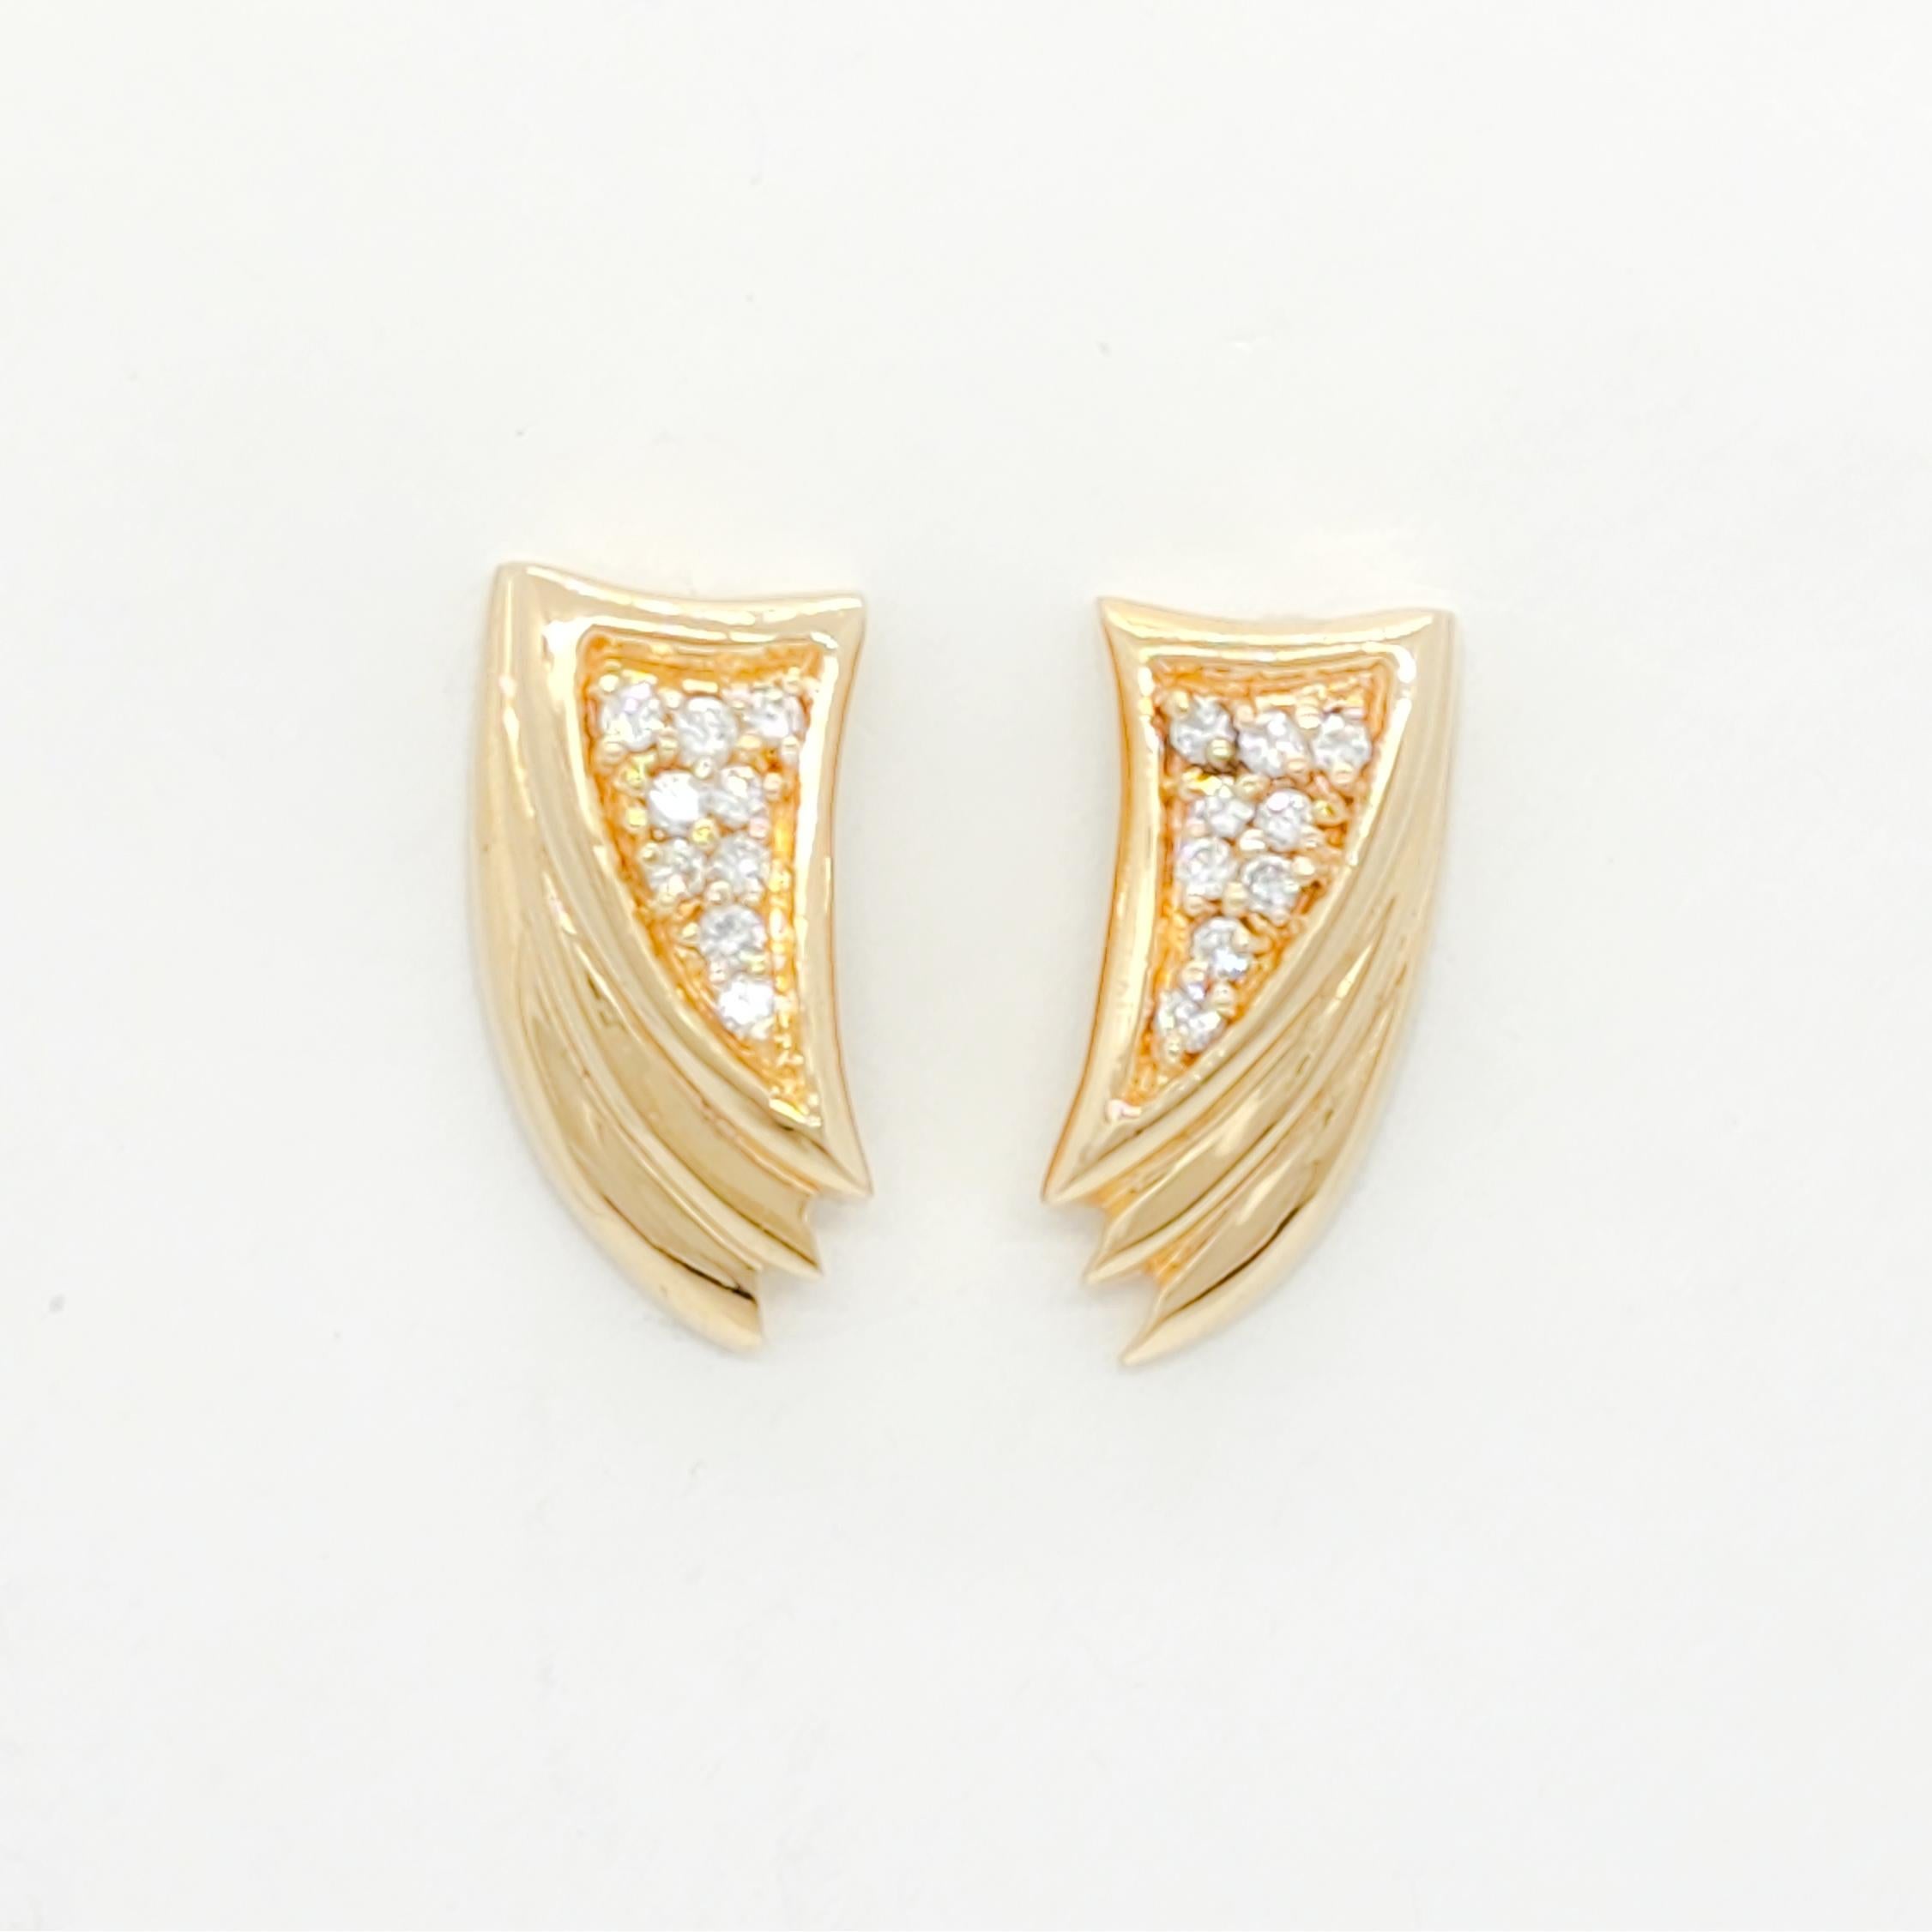 Wunderschöne Ohrringe mit weißen runden Diamanten von 0.50 ct. guter Qualität.  Handgefertigt in 14k Gelbgold.  Diese Ohrringe sind witzig und einfach zu jeder Gelegenheit zu tragen.  Für gepiercte Ohren.